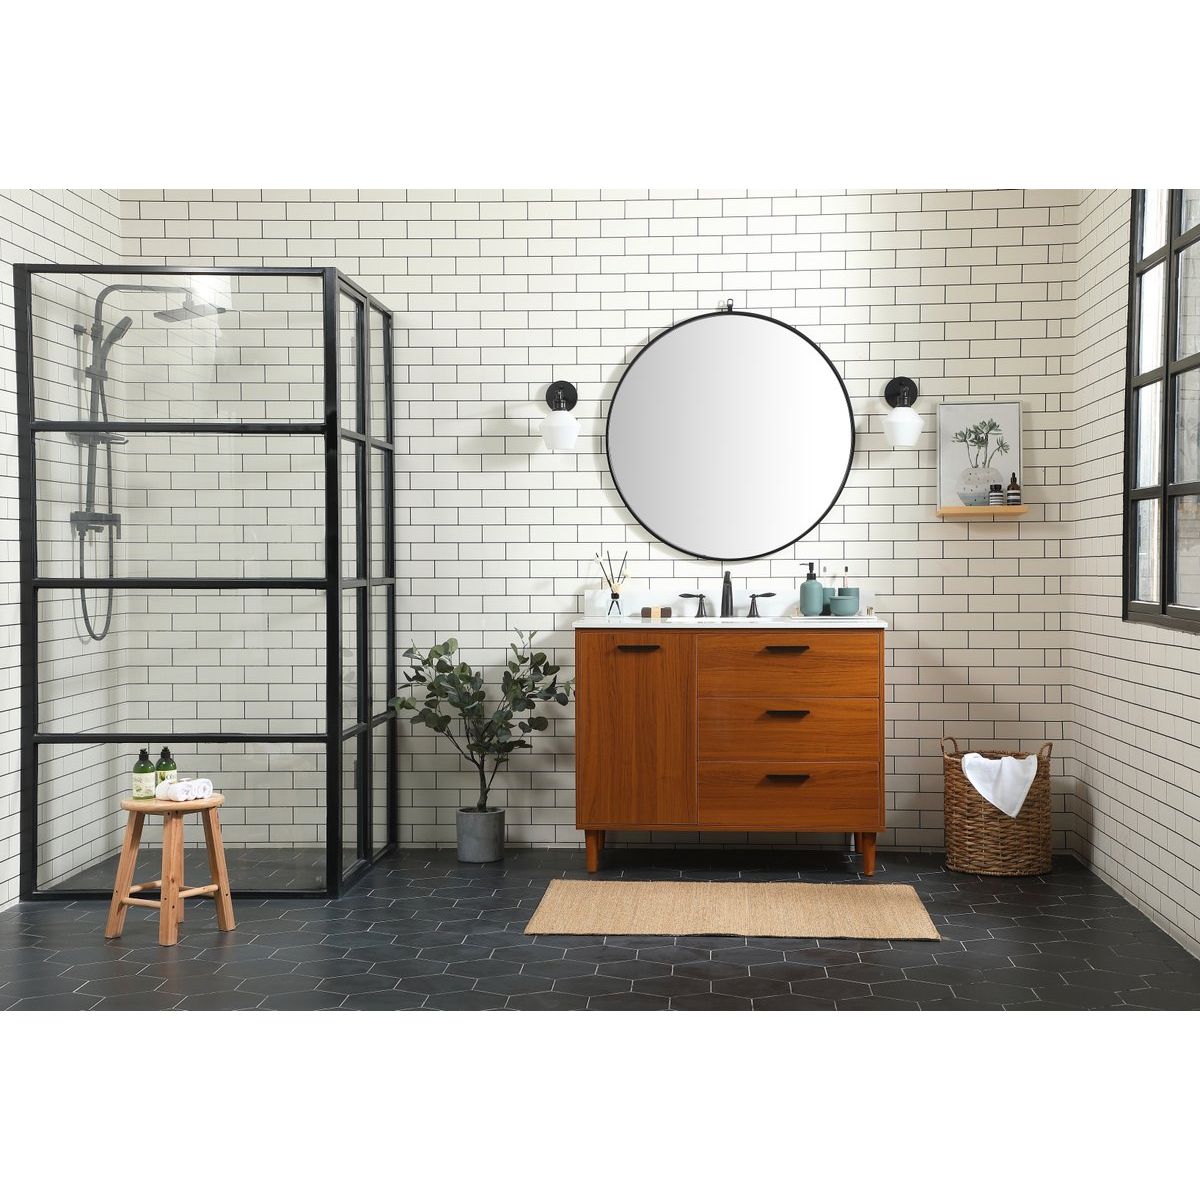 VF47042MTK-BS 42" Bathroom Vanity in Teak With Backsplash